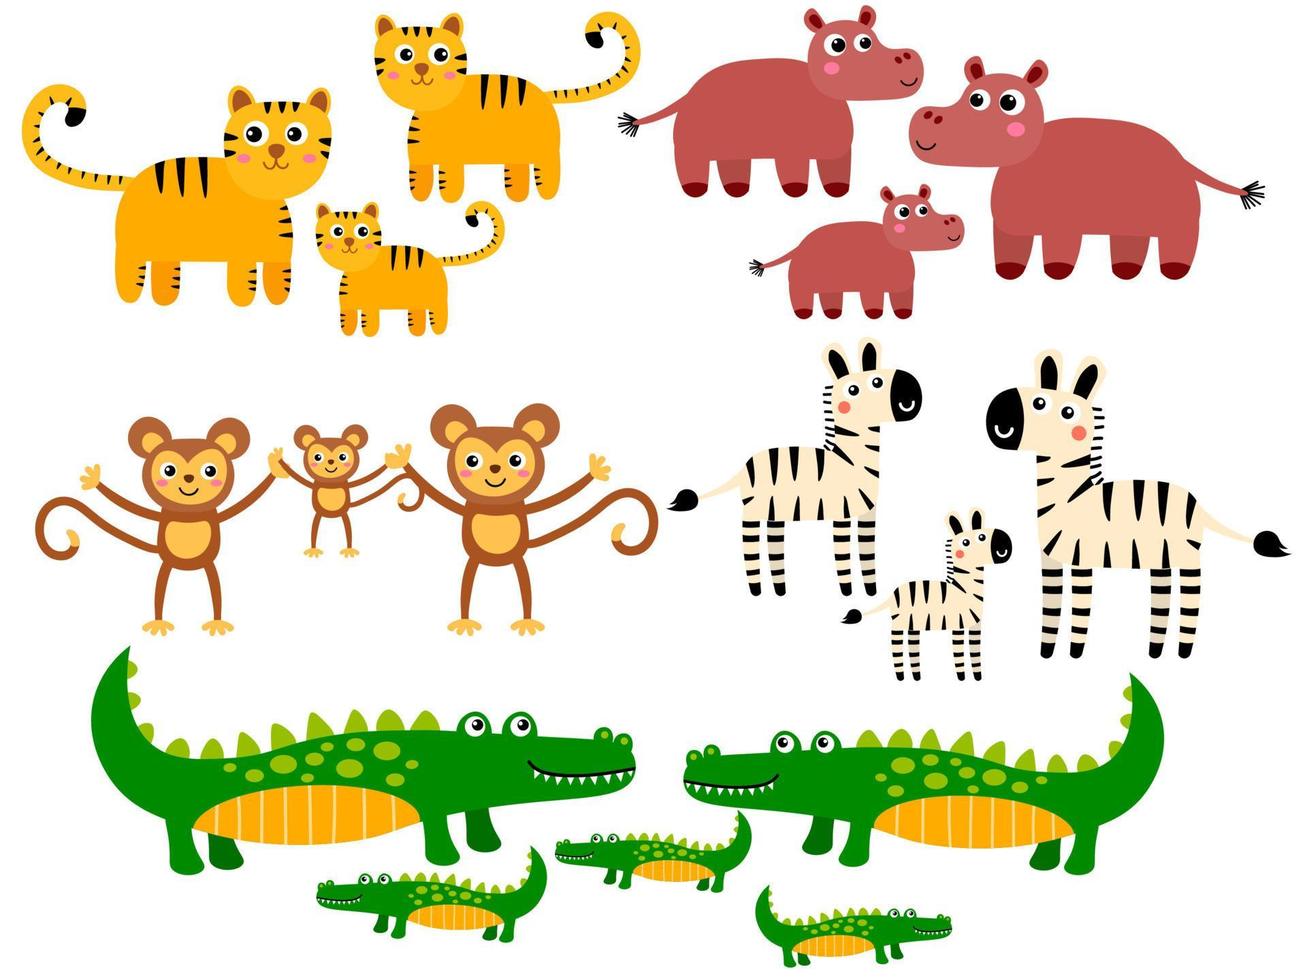 söt tiger och flodhäst, apa och zebra, krokodilfamiljer. tecknade afrikanska vilda djur i barnslig platt stil isolerad på vit bakgrund vektor